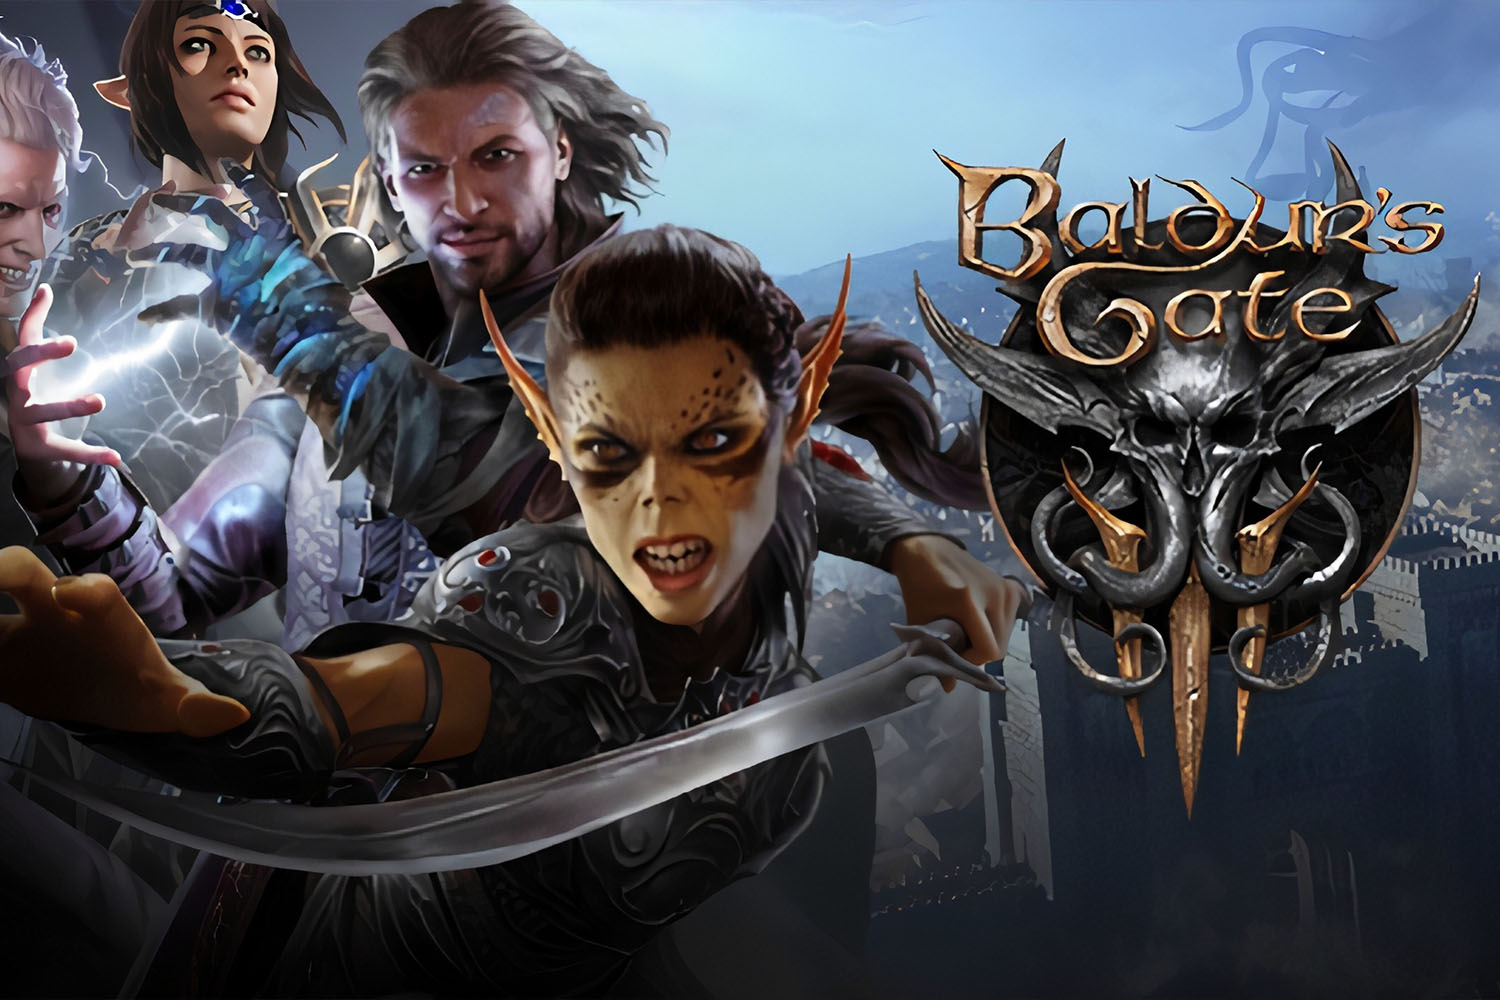 Baldur’s Gate video game cover